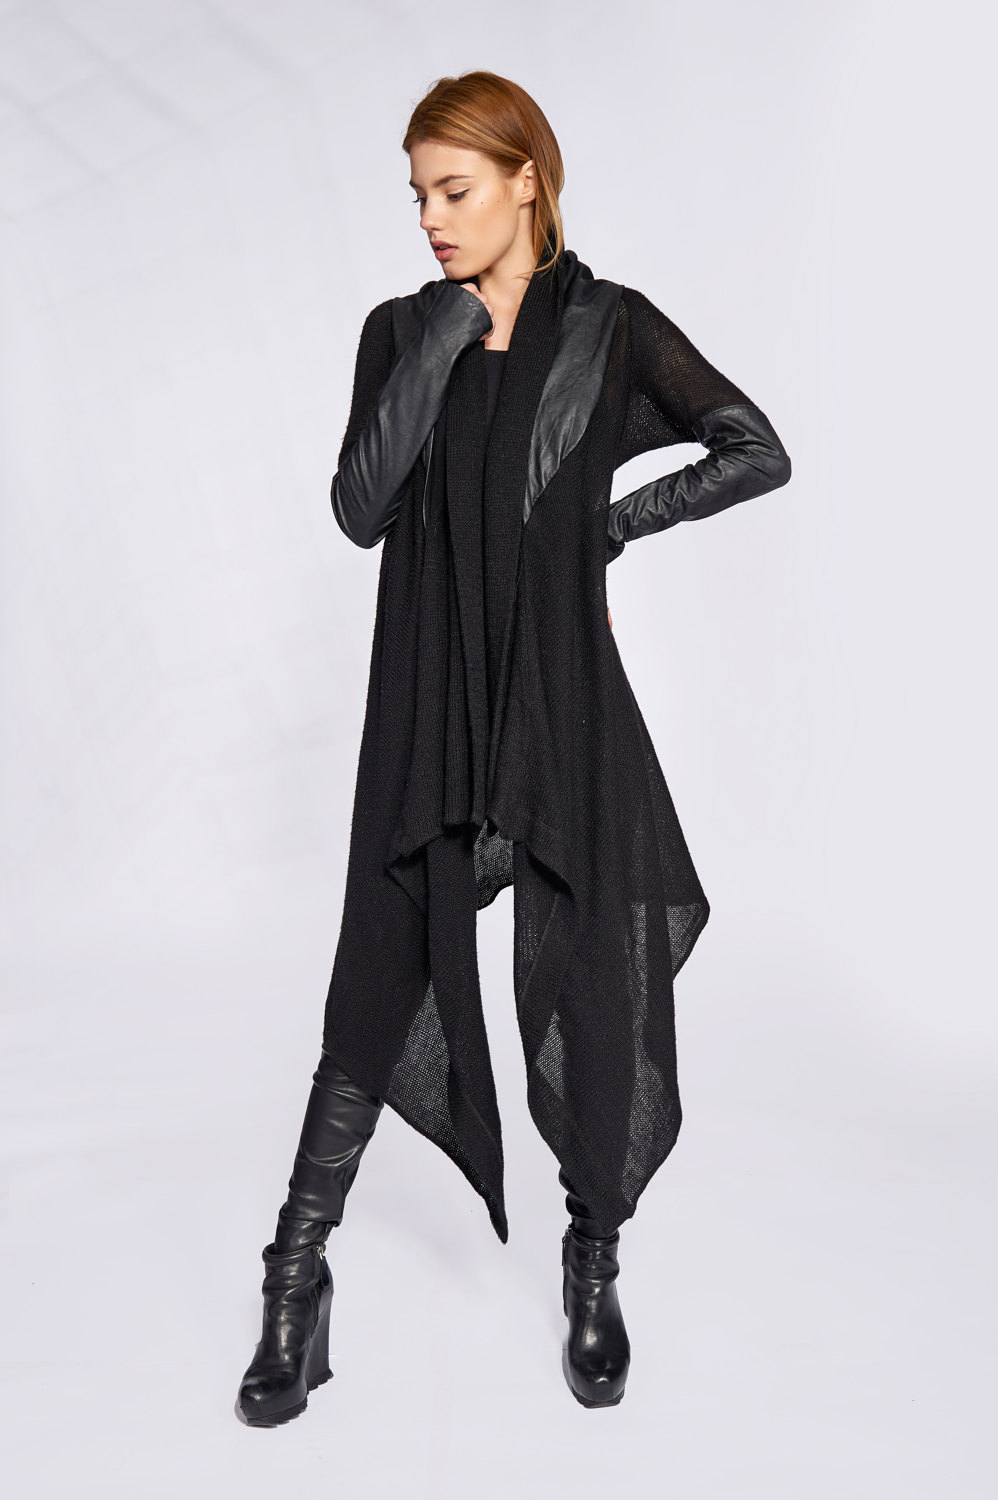 Asymmetric Cardigan Futuristic Clothing Gothic Clothing | Etsy